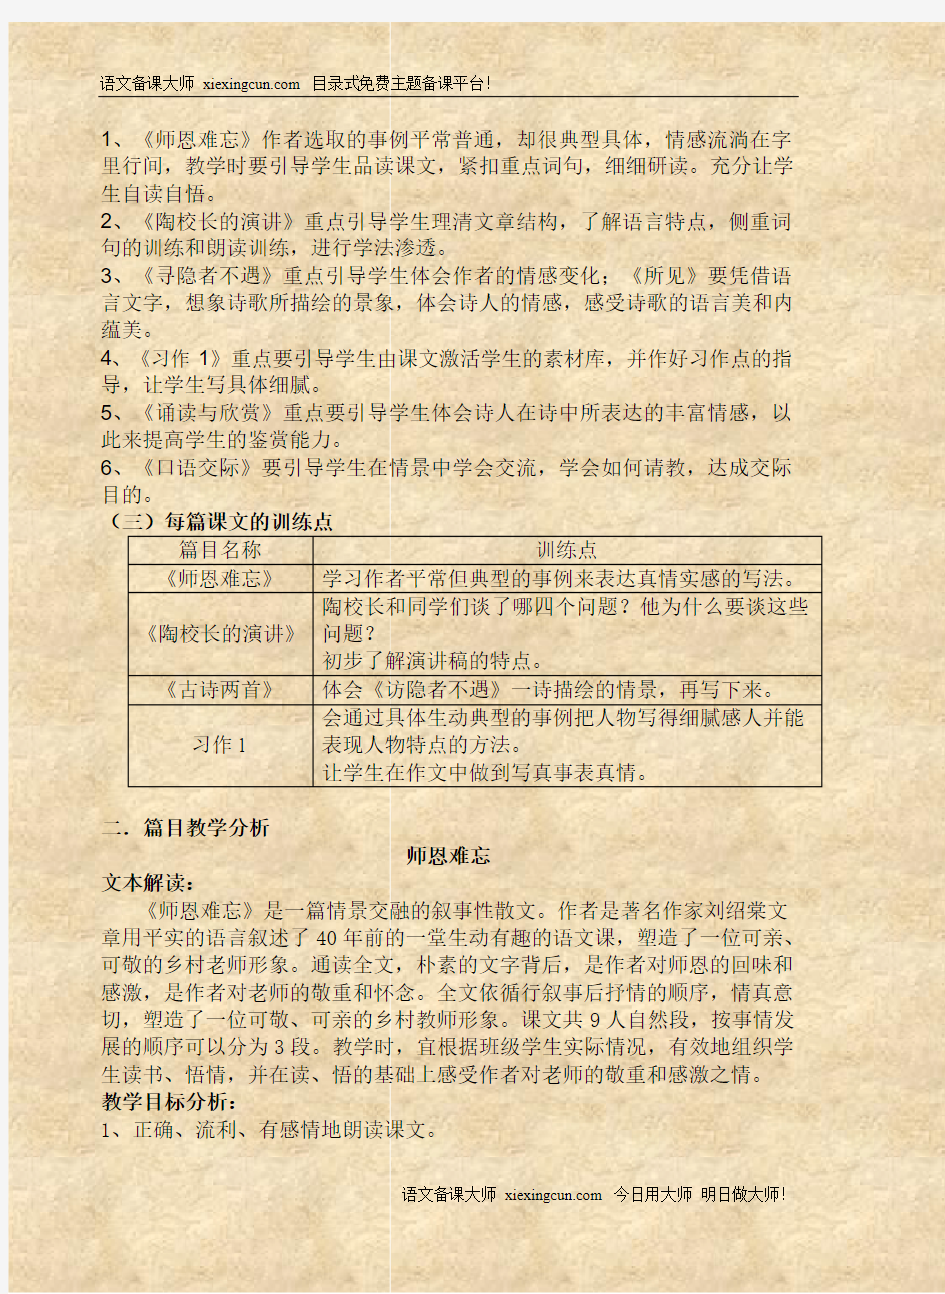 苏教版国标本小学语文五年级上册(第一单元)教材分析